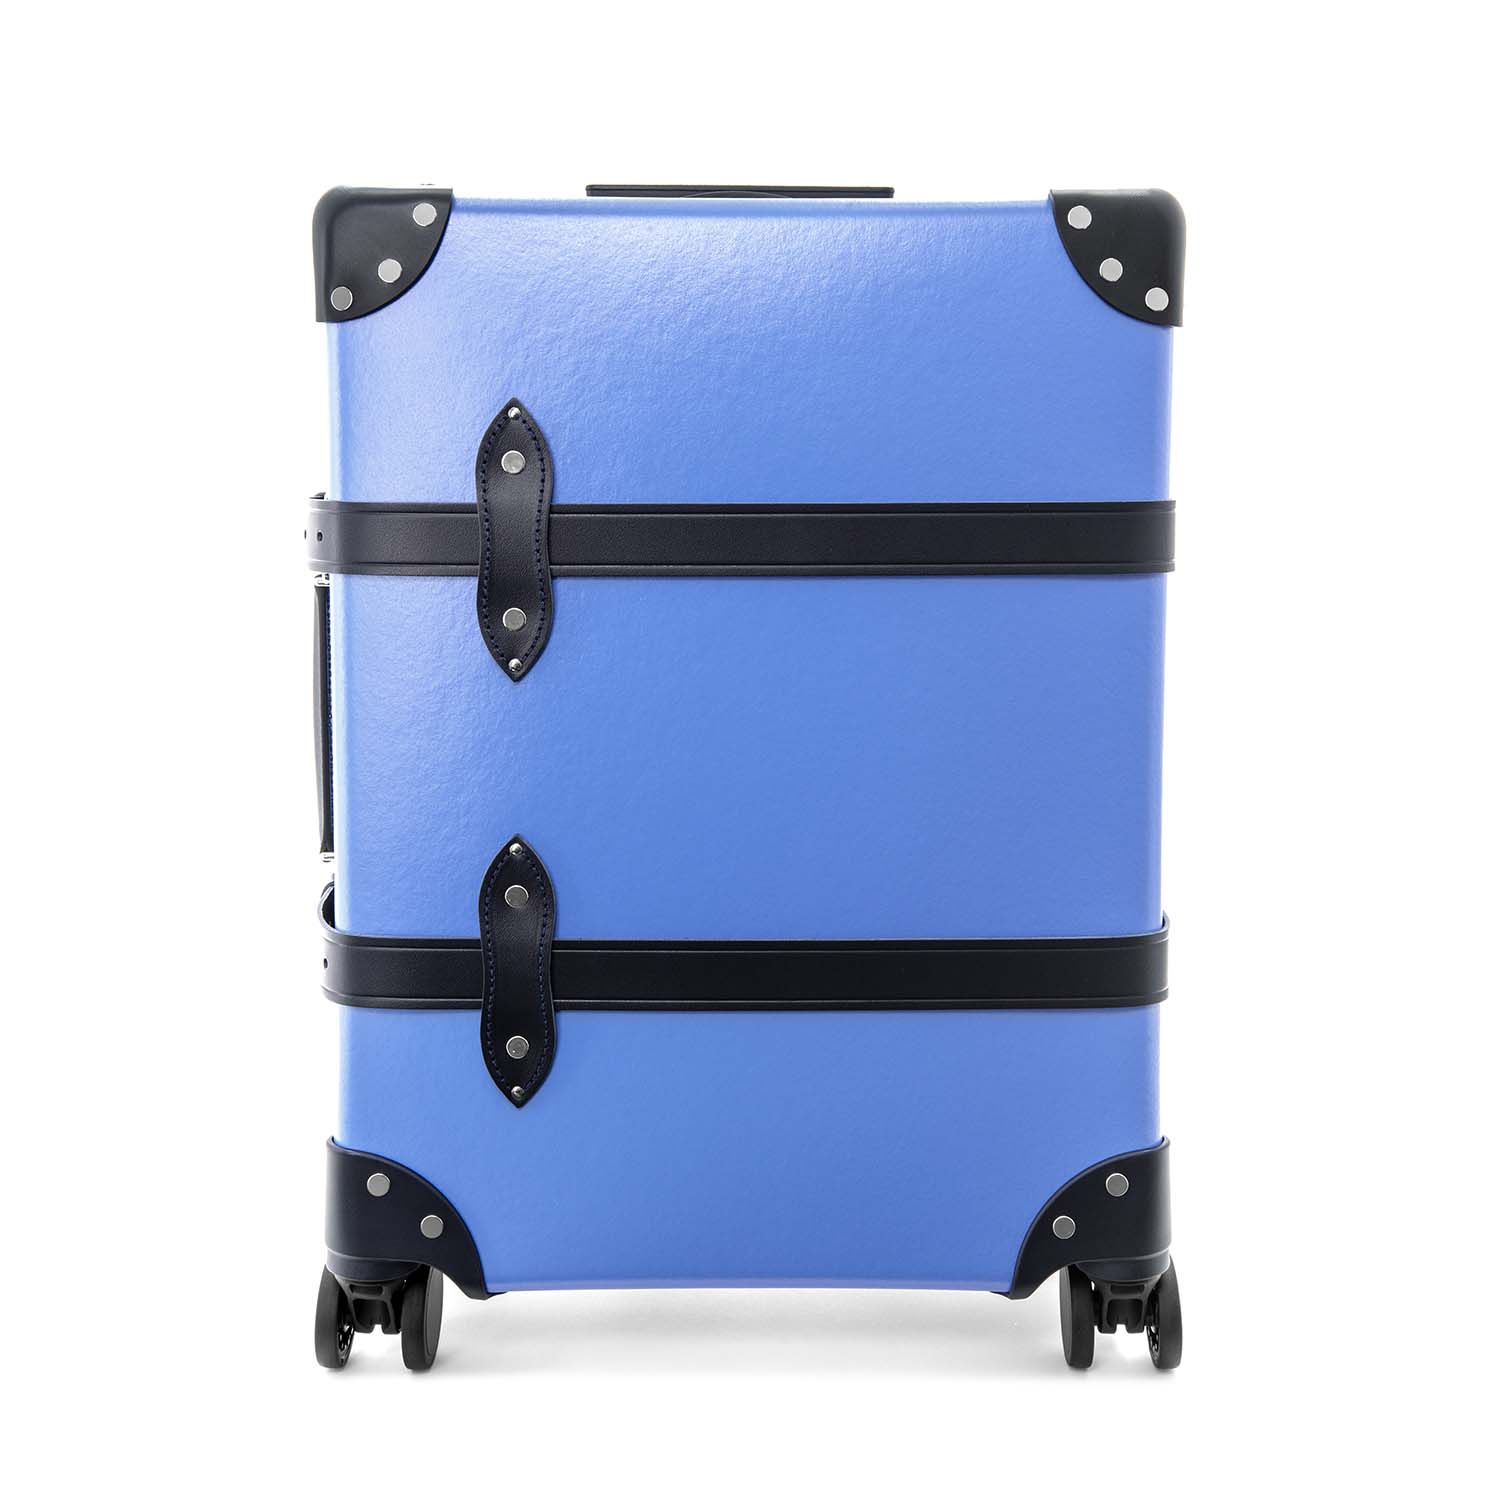 グローブトロッター 機内持ち込み可スーツケース - 旅行用バッグ 